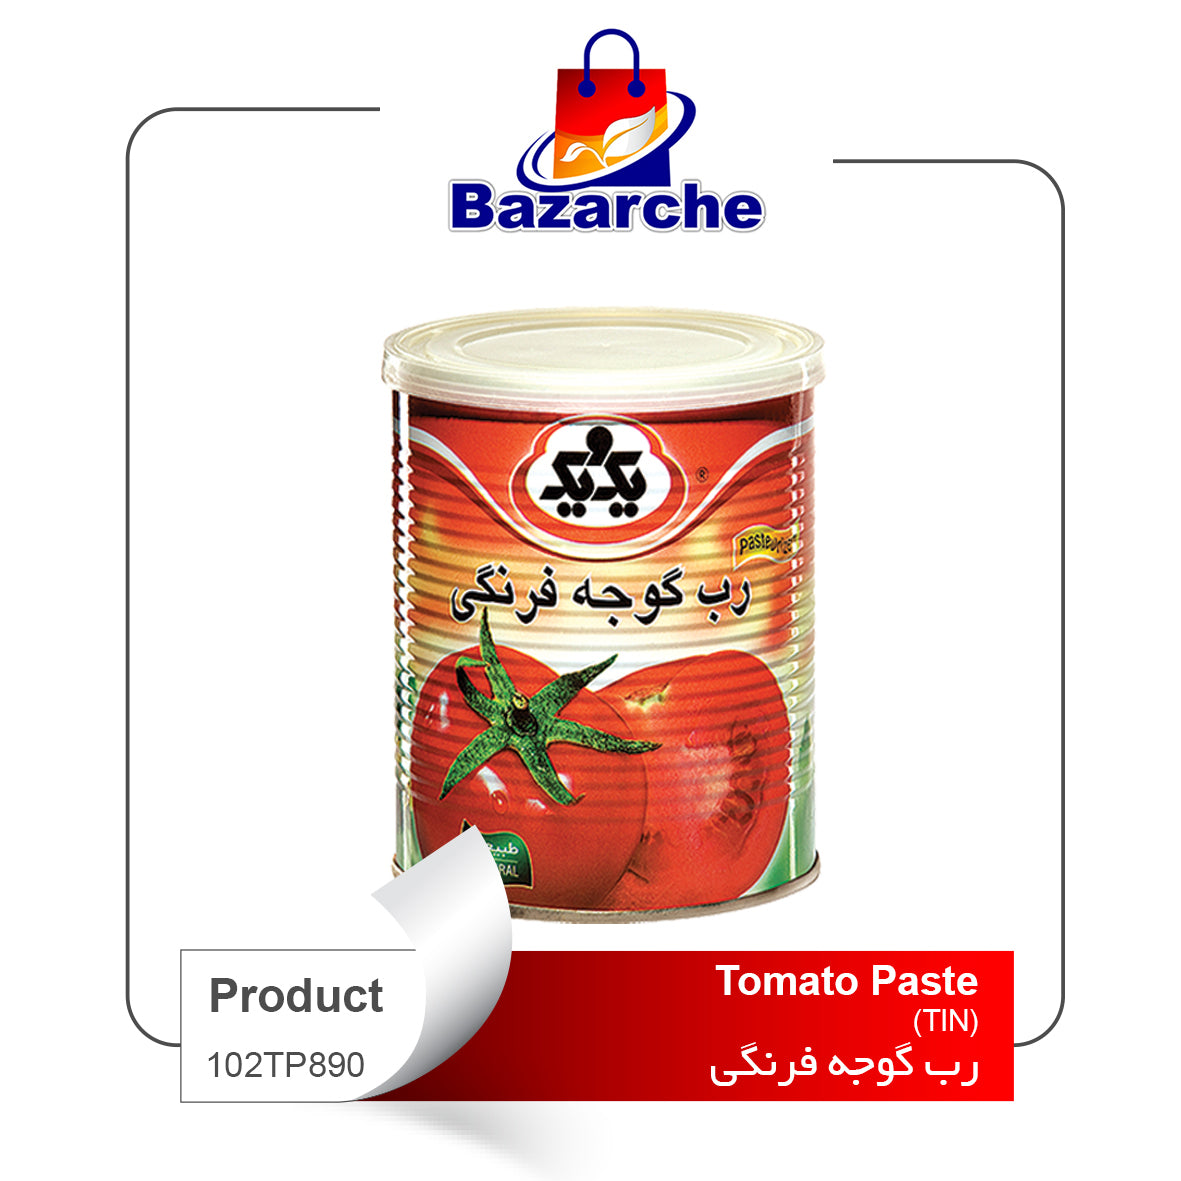 Tomato Paste (TIN) 1&1(رب گوجه فرنگی)